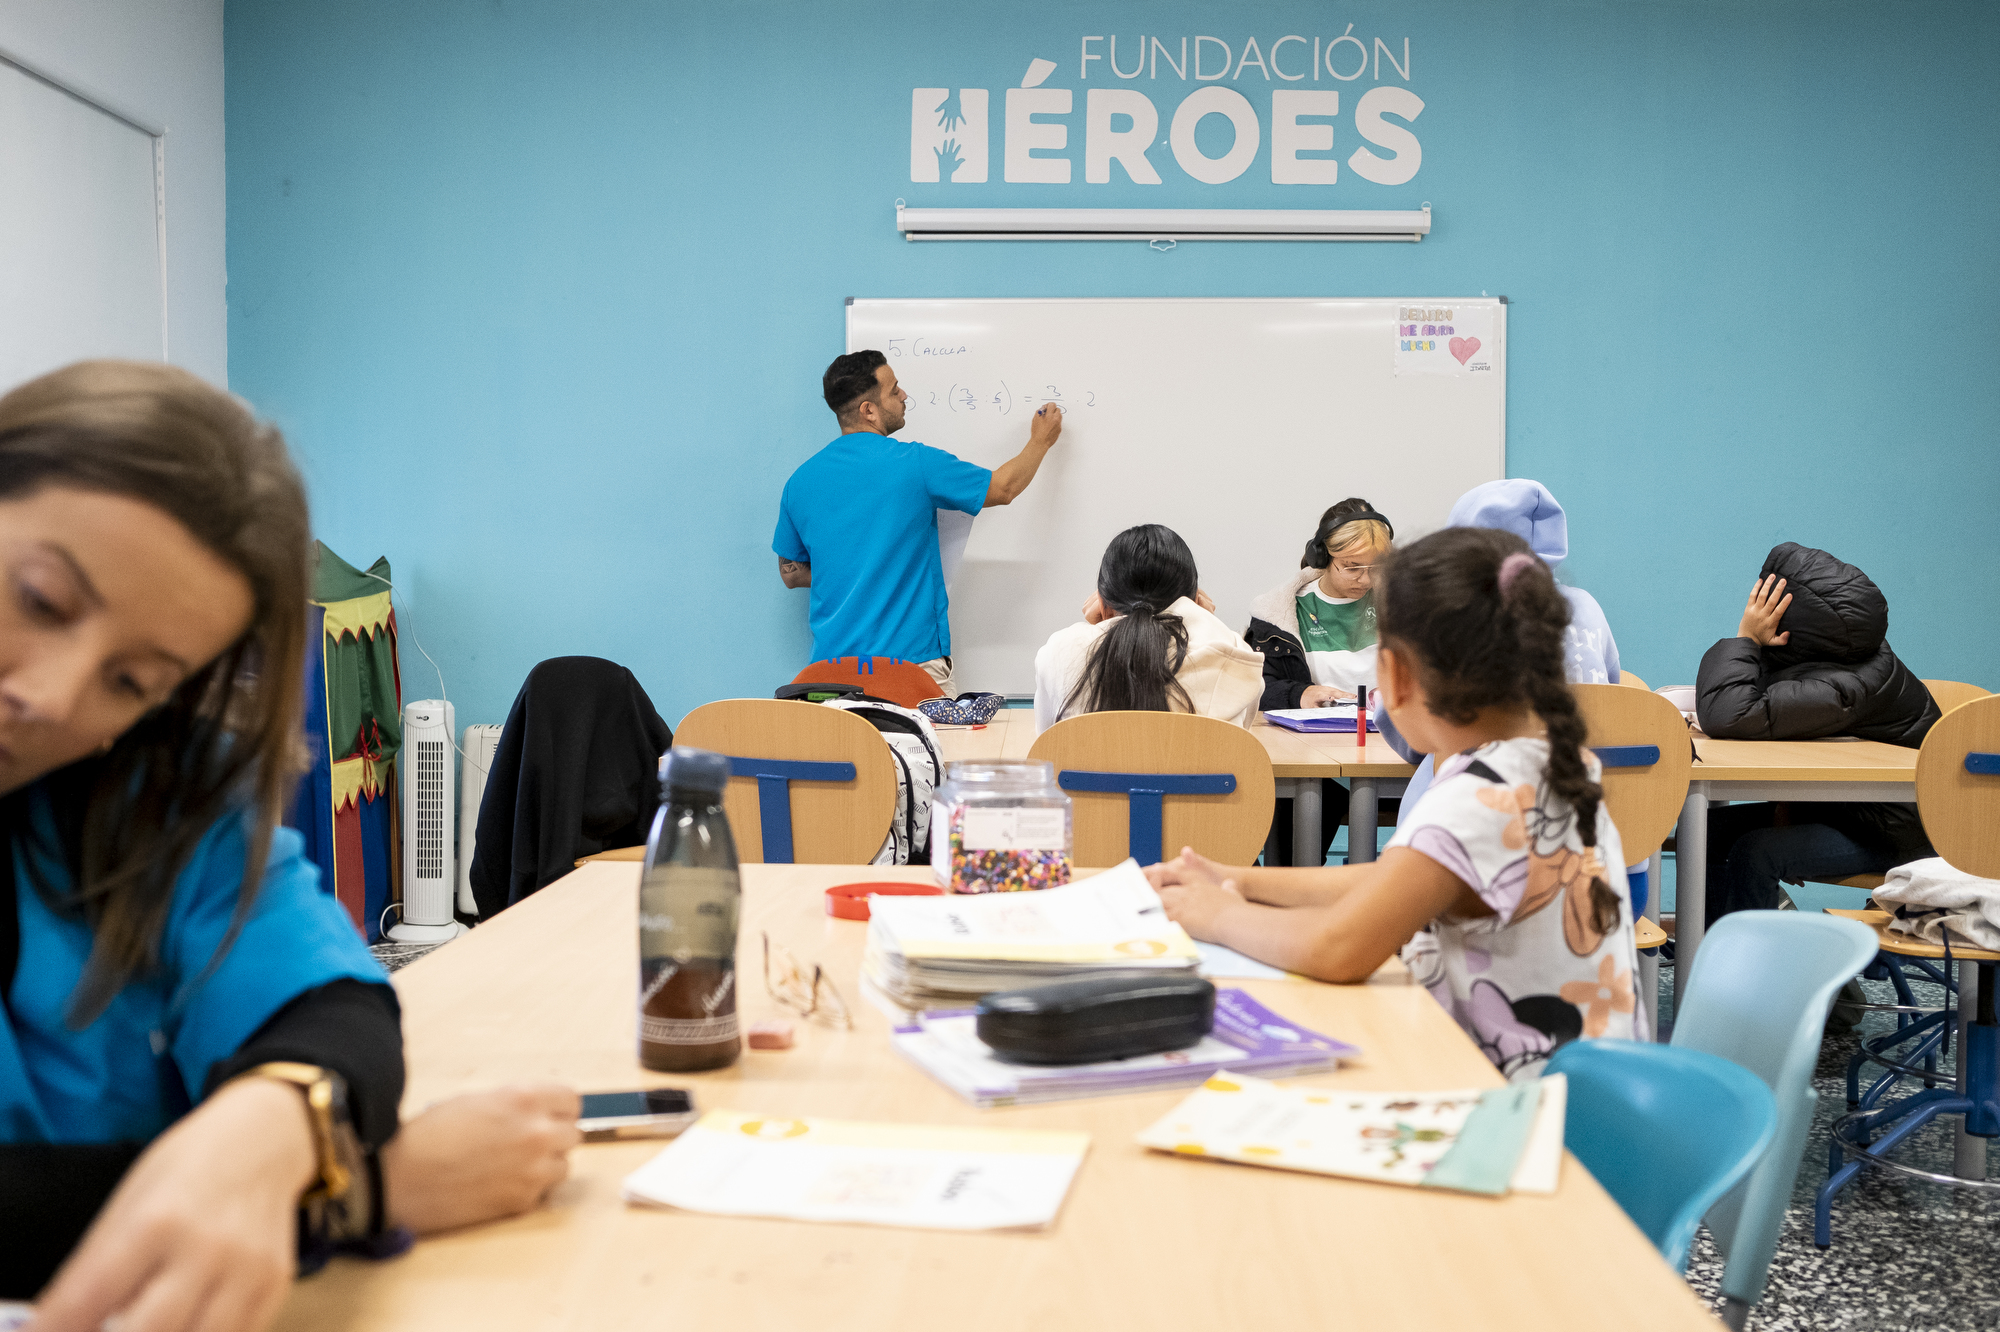 Profesor dando clases en fundación héroes